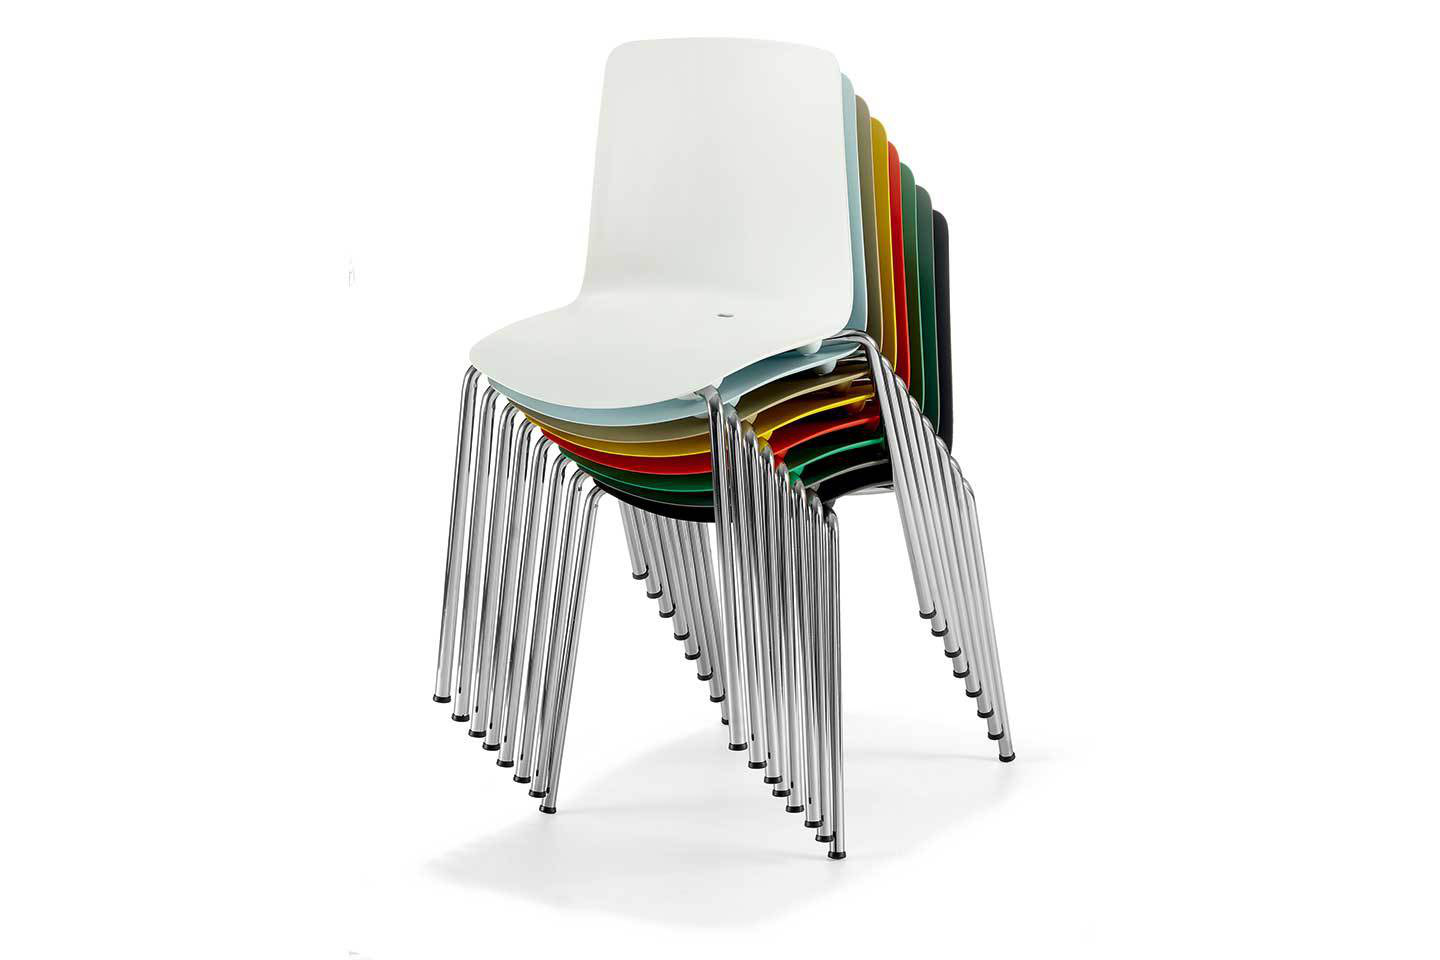 Mobili Italia_Colos VESPER 1 side chair